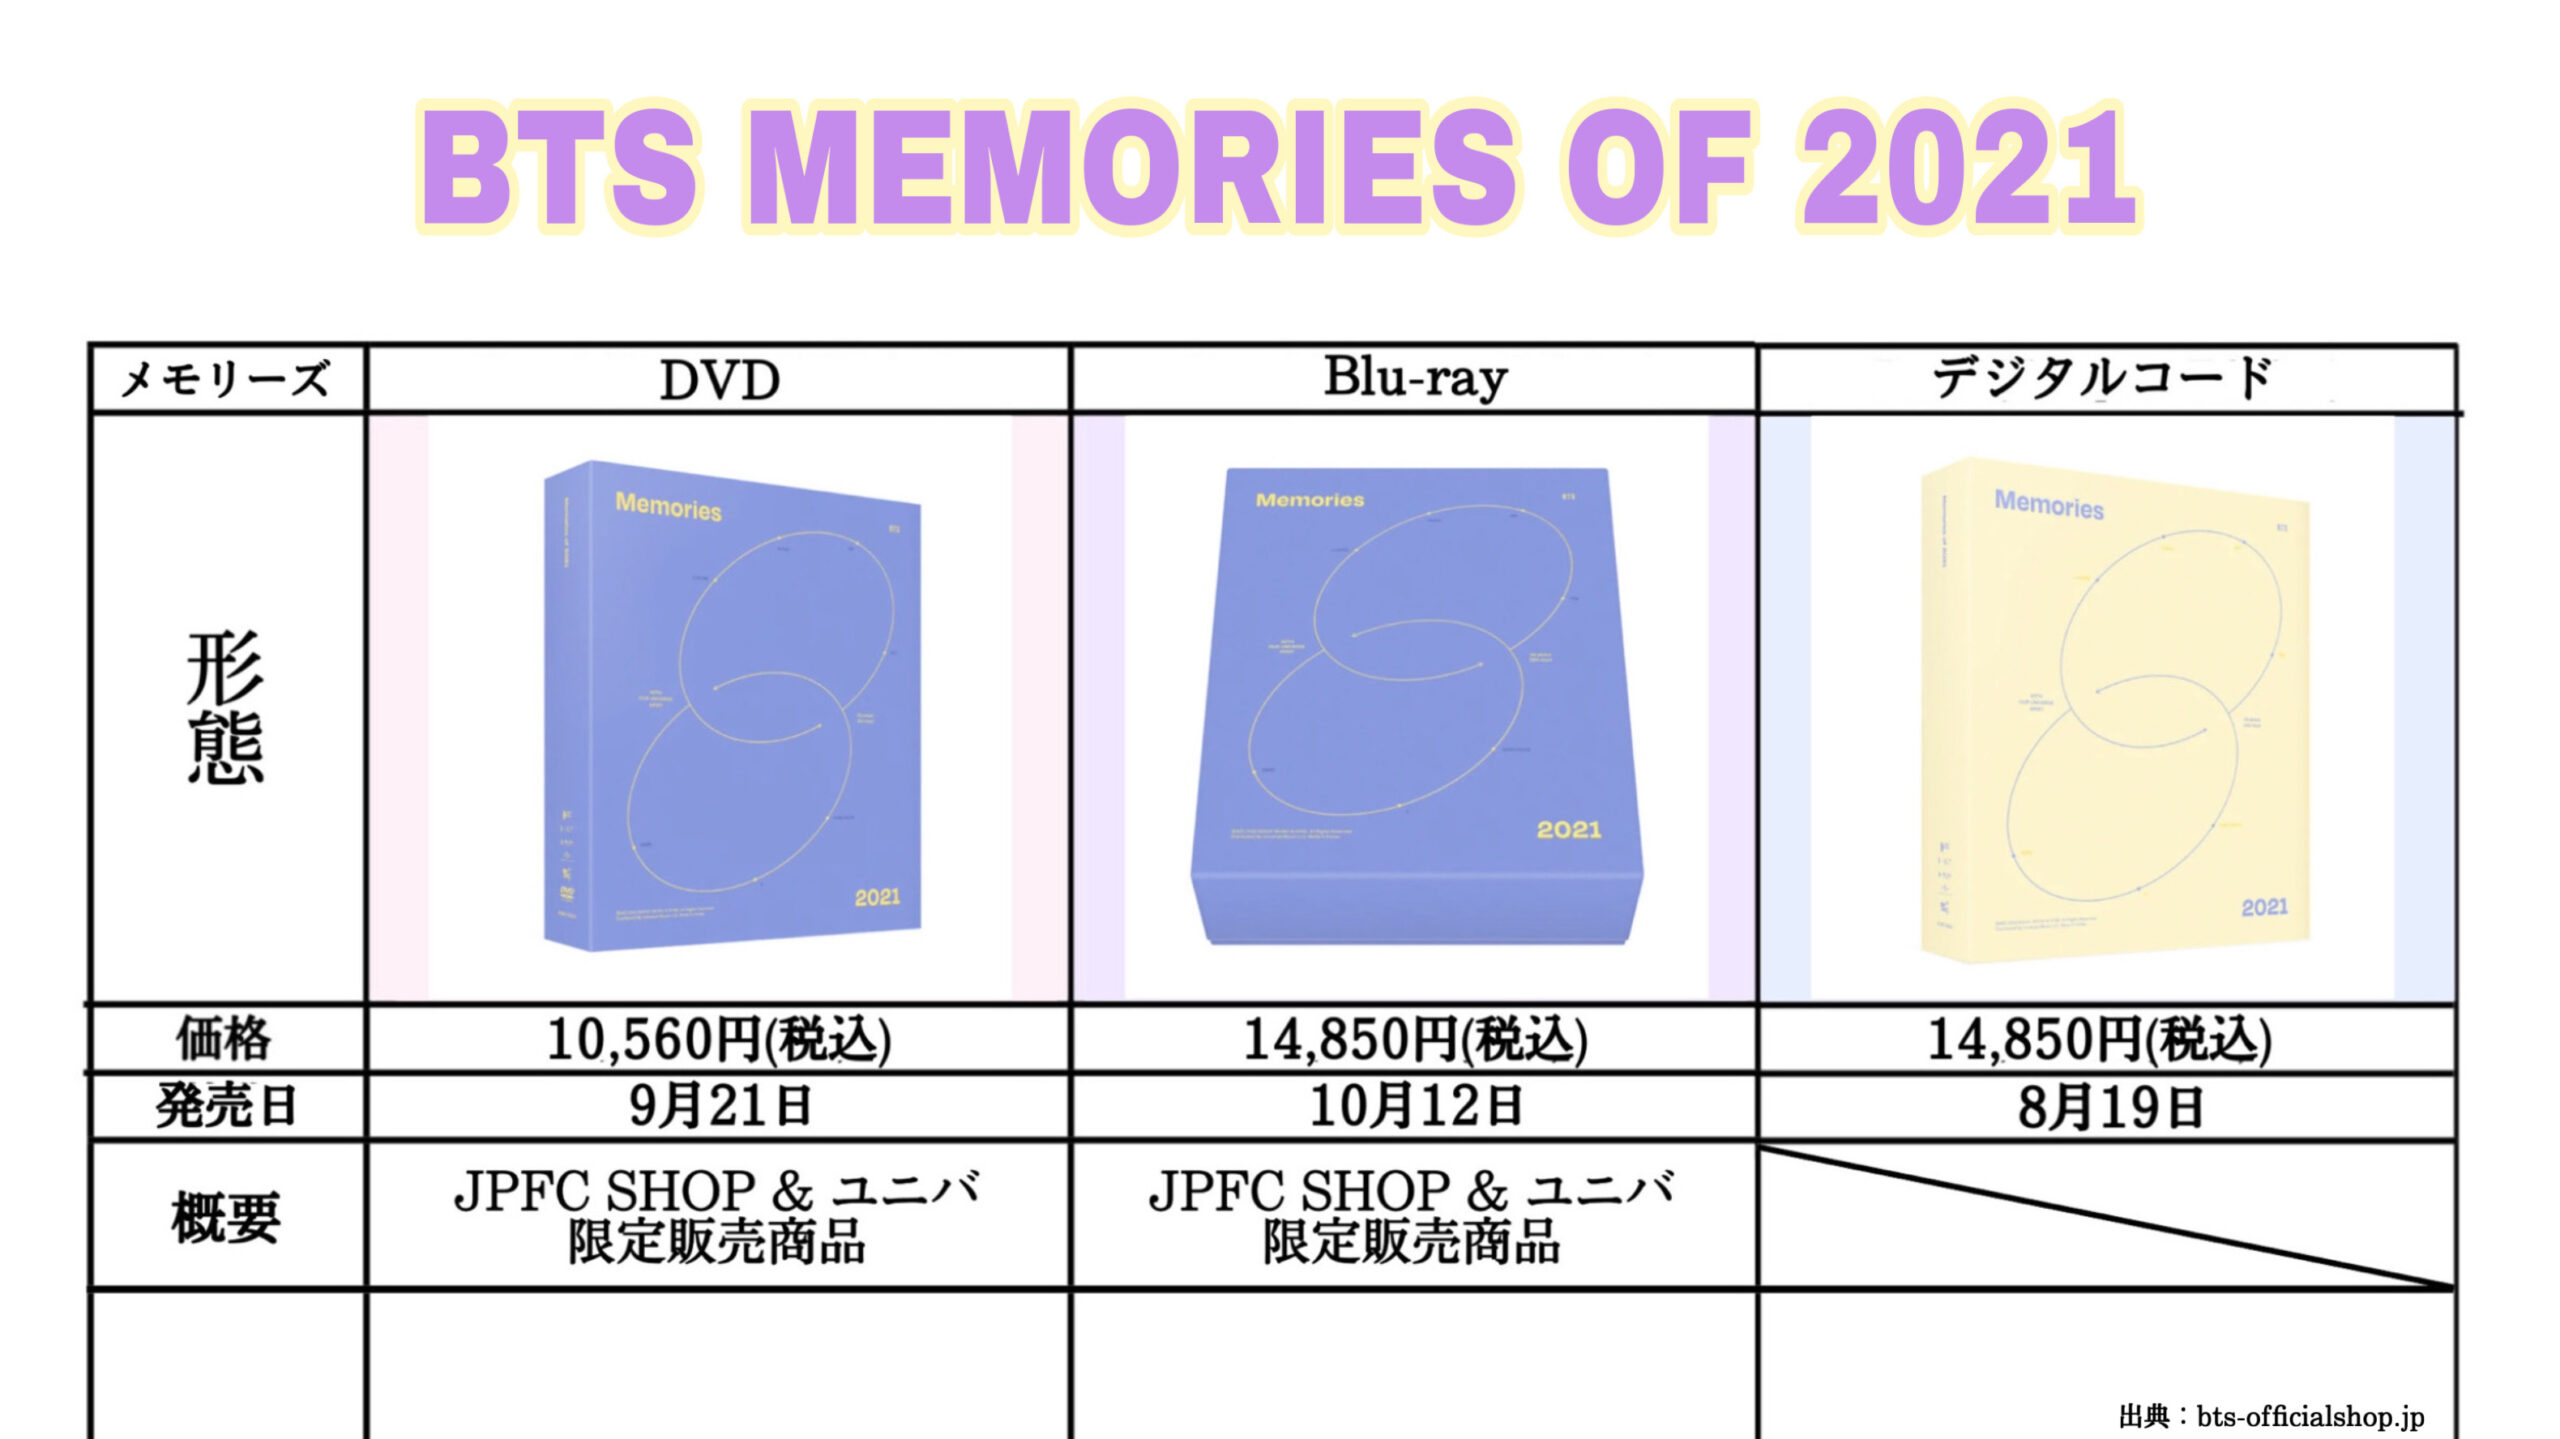 BTS MEMORIES OF 2021のDVD、Blu-ray、デジタルコードの違いについて 